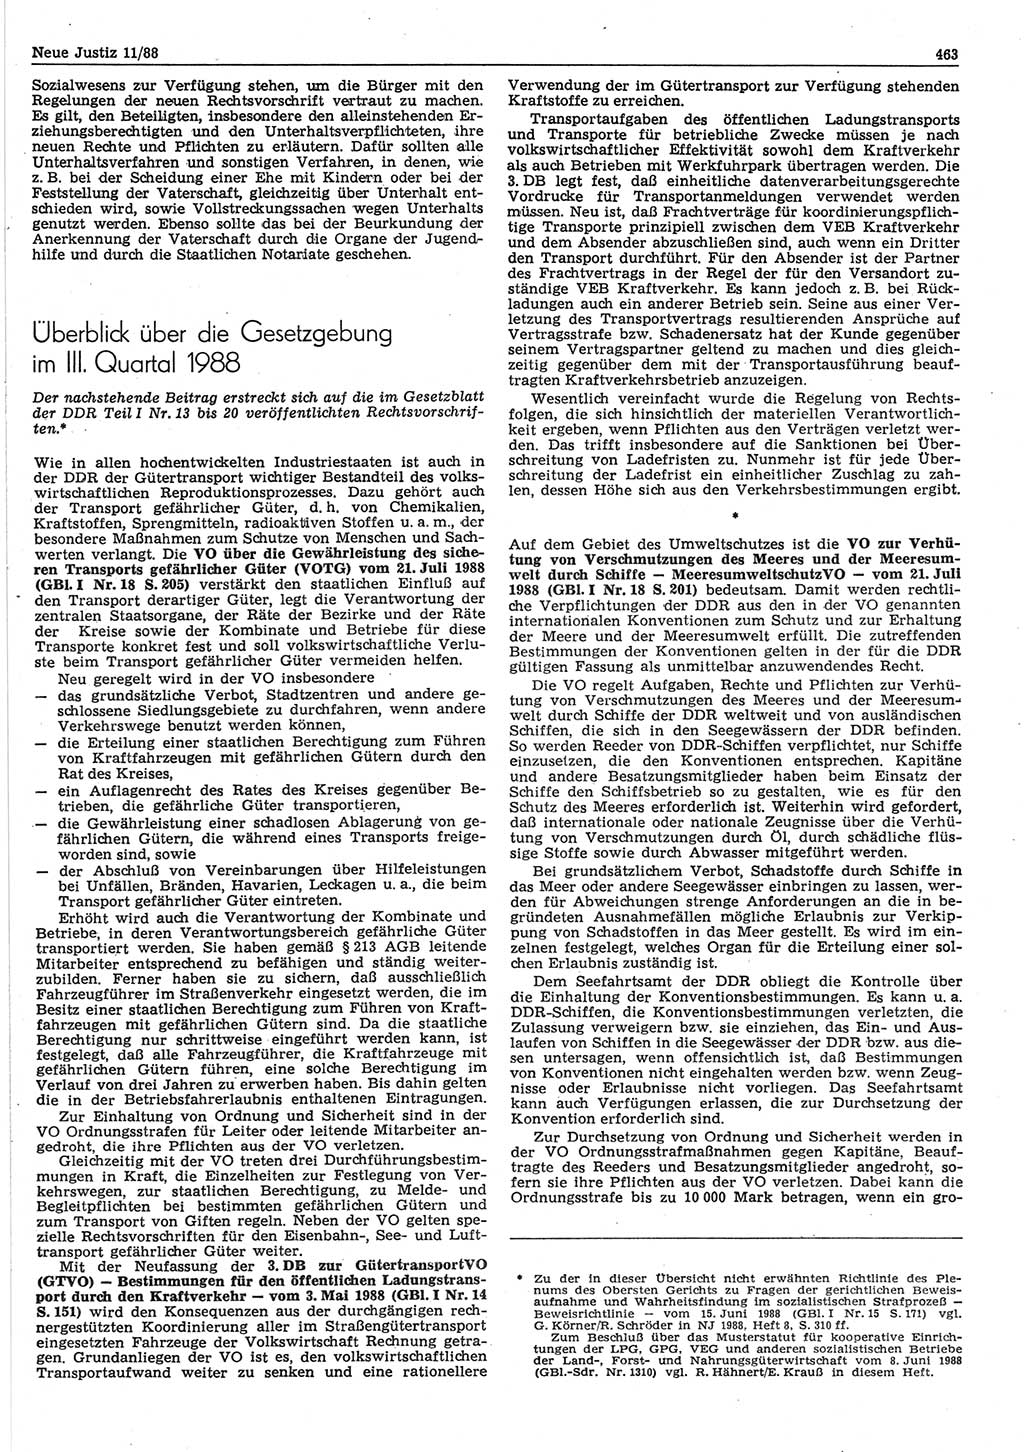 Neue Justiz (NJ), Zeitschrift für sozialistisches Recht und Gesetzlichkeit [Deutsche Demokratische Republik (DDR)], 42. Jahrgang 1988, Seite 463 (NJ DDR 1988, S. 463)